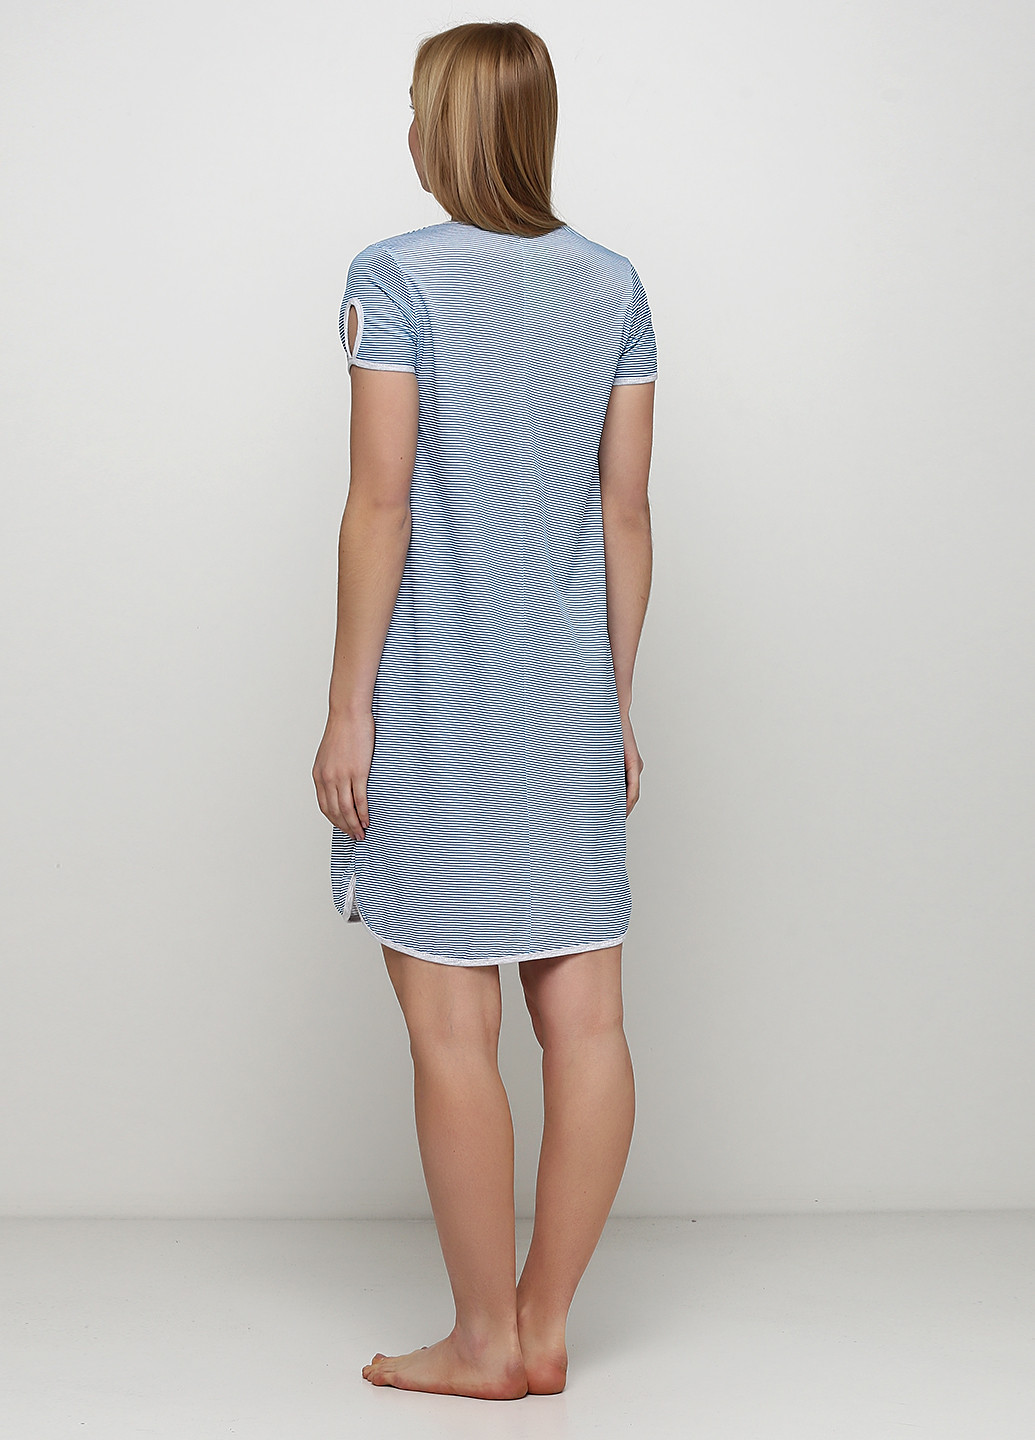 Темно-синее домашнее платье платье-футболка Трикомир в полоску